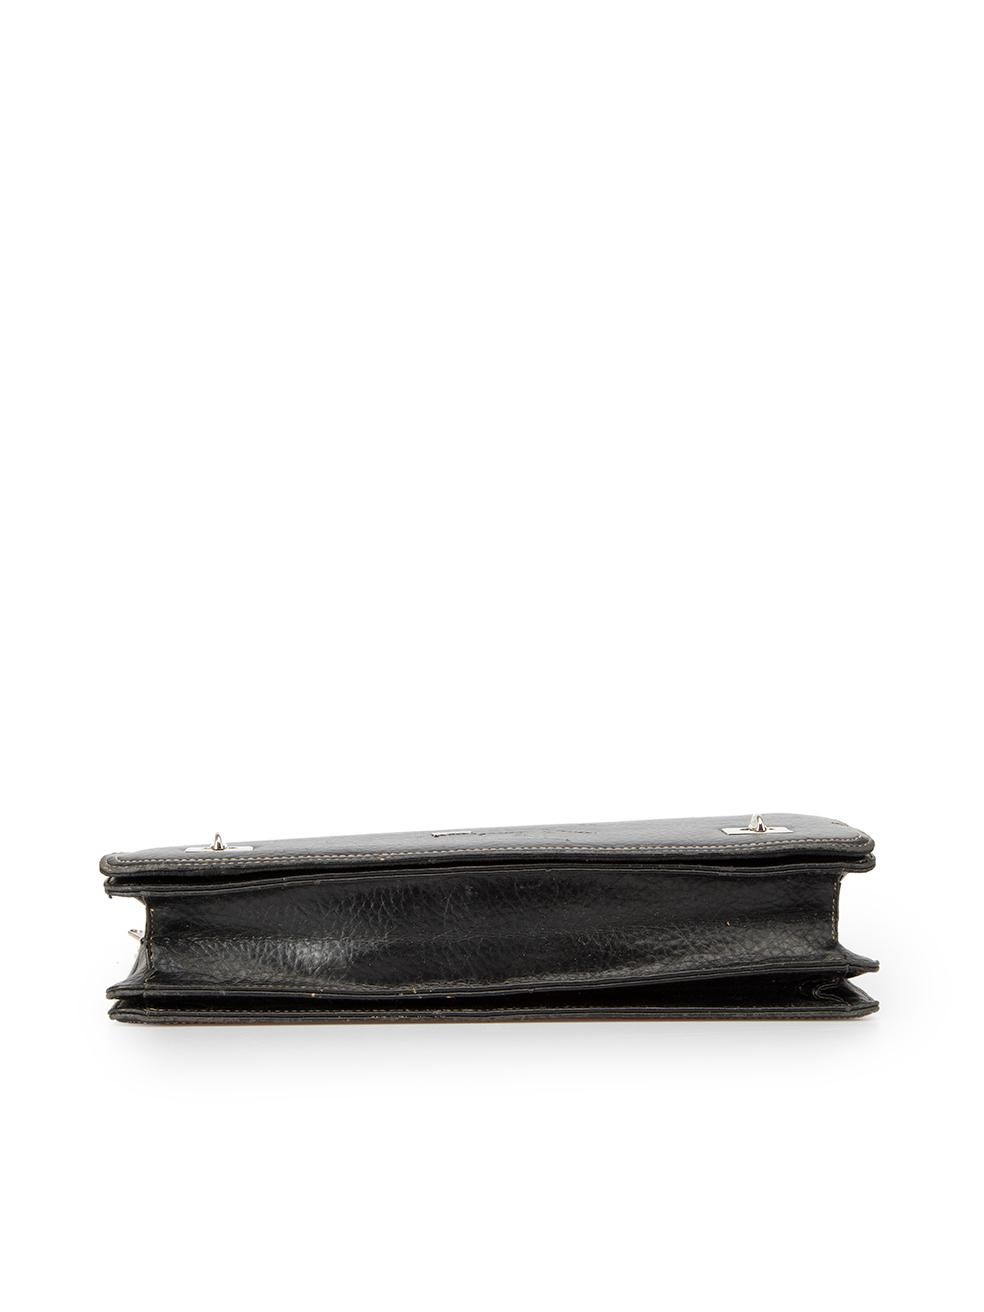 Salvatore Ferragamo Women's Black Leather Document File Briefcase In Good Condition In London, GB